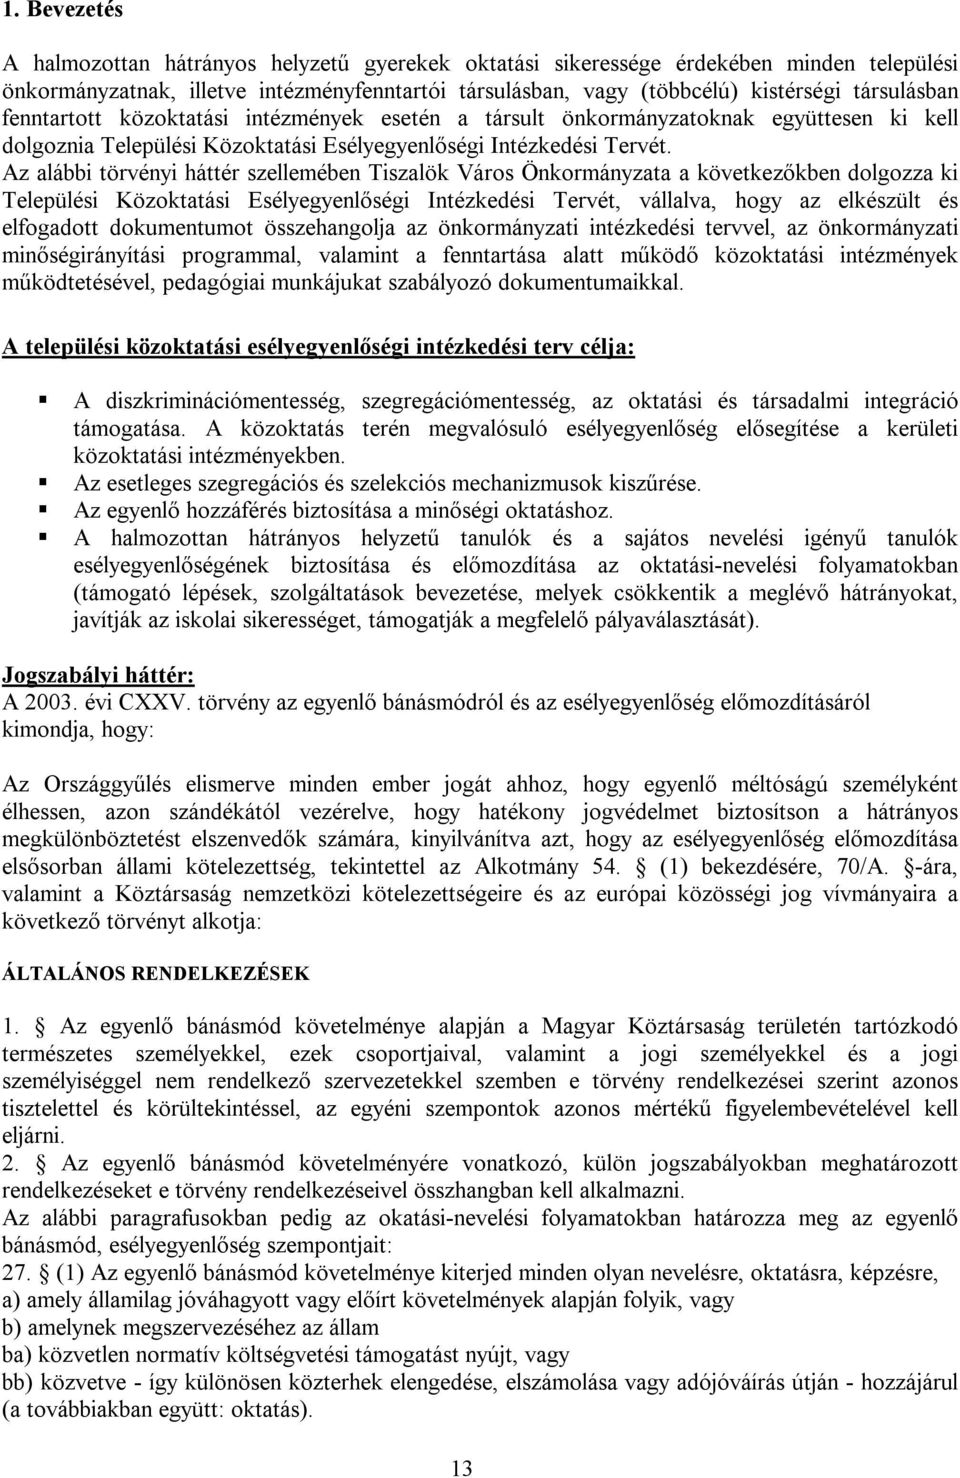 Az alábbi törvényi háttér szellemében Tiszalök Város Önkormányzata a következőkben dolgozza ki Települési Közoktatási Esélyegyenlőségi Intézkedési Tervét, vállalva, hogy az elkészült és elfogadott